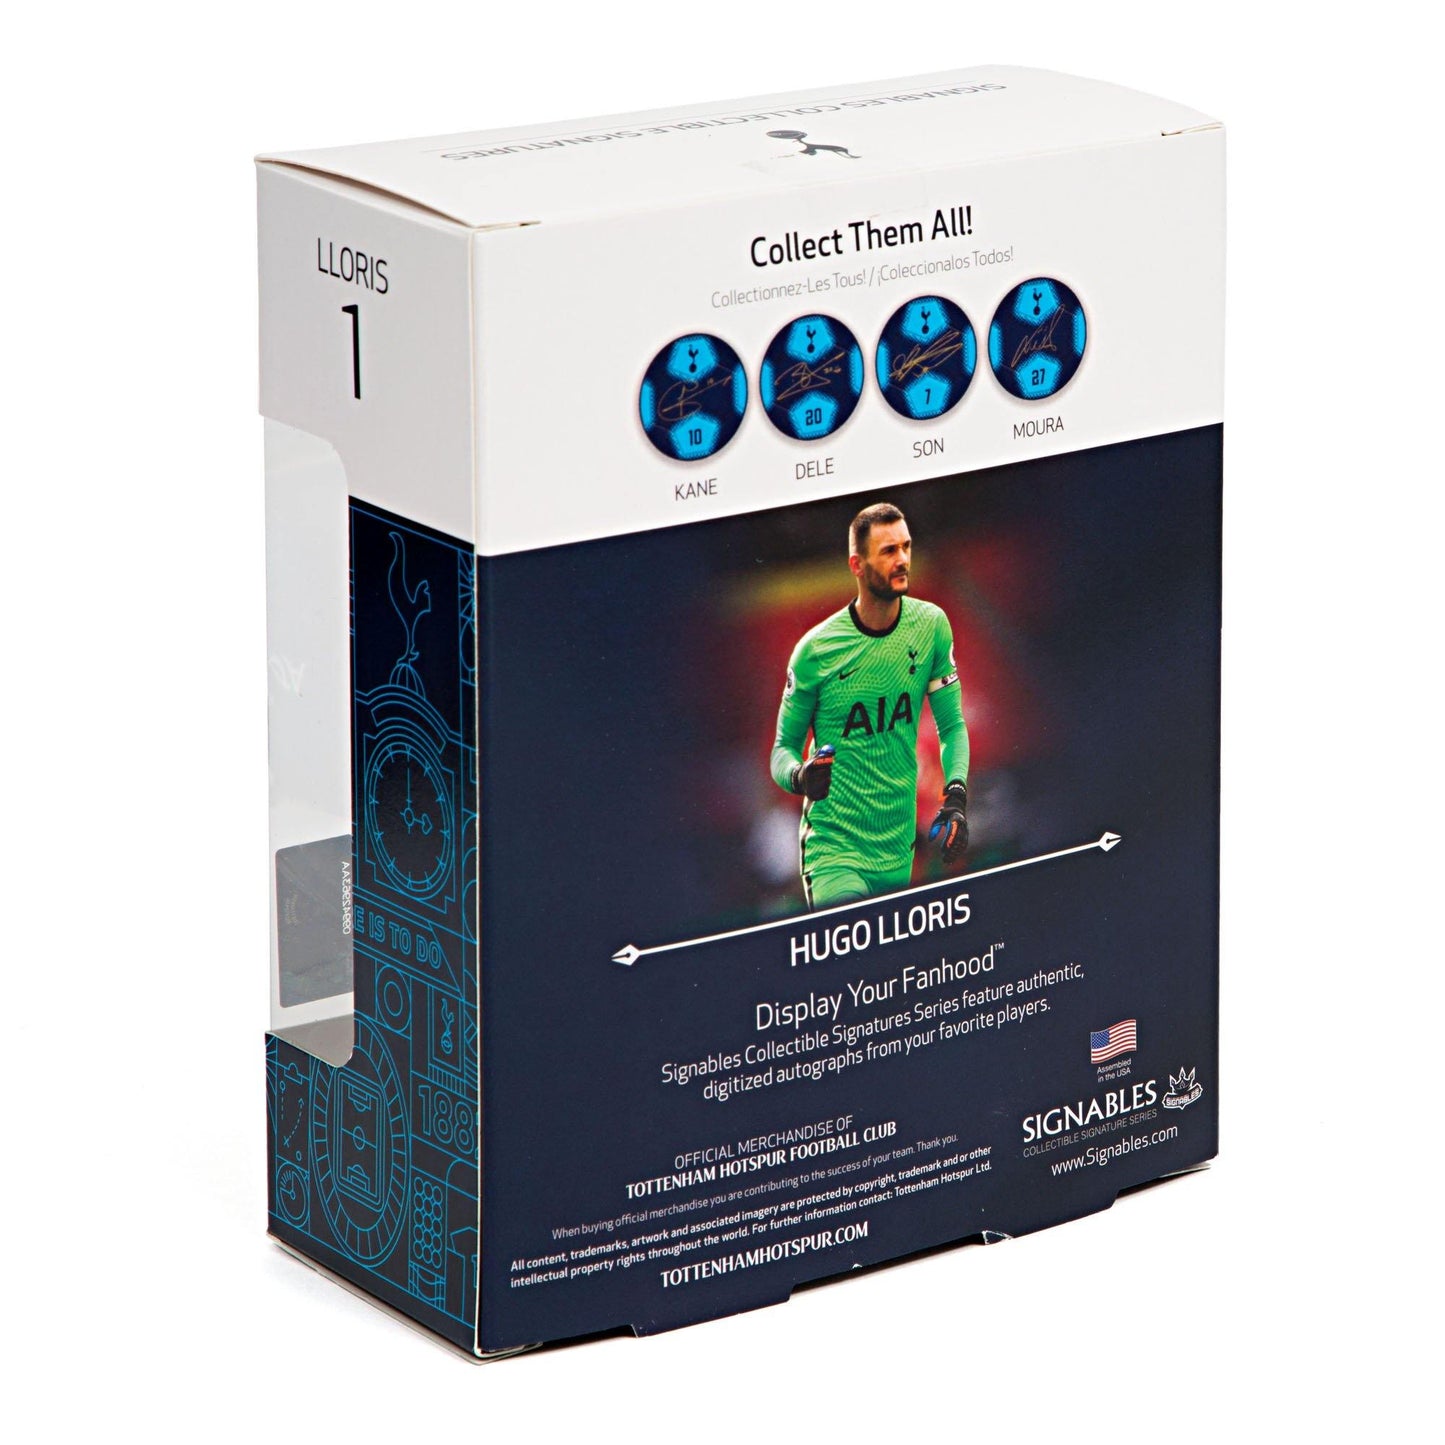 Hugo Lloris - Tottenham Hotspur F.C. Signables Collectible Box Back